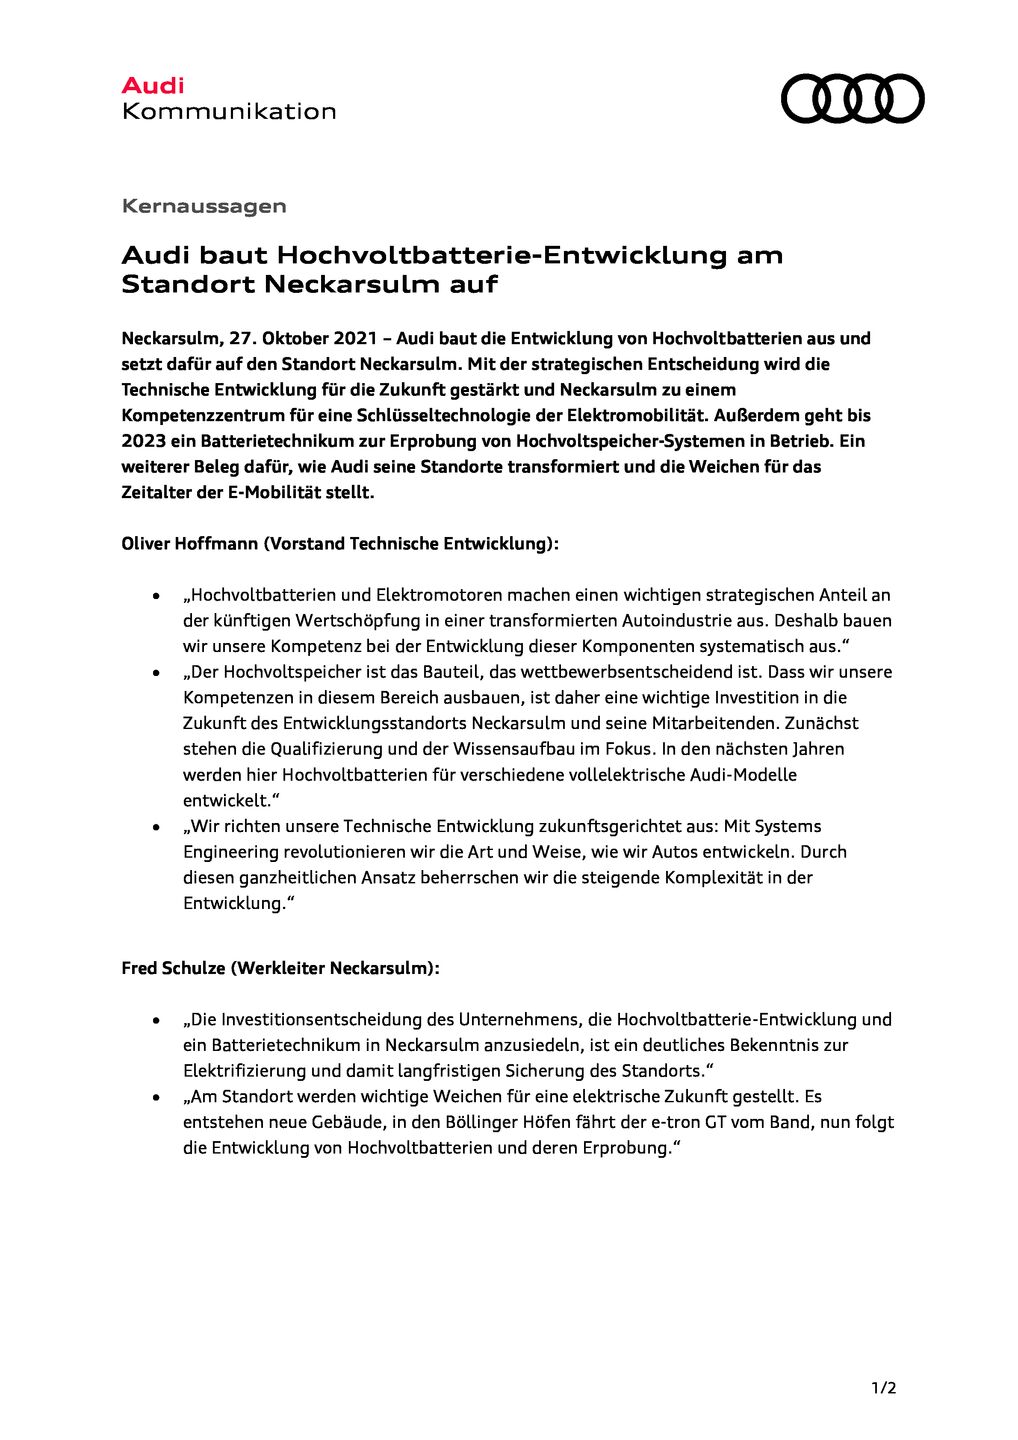 Audi baut Hochvoltbatterie-Entwicklung am Standort Neckarsulm auf